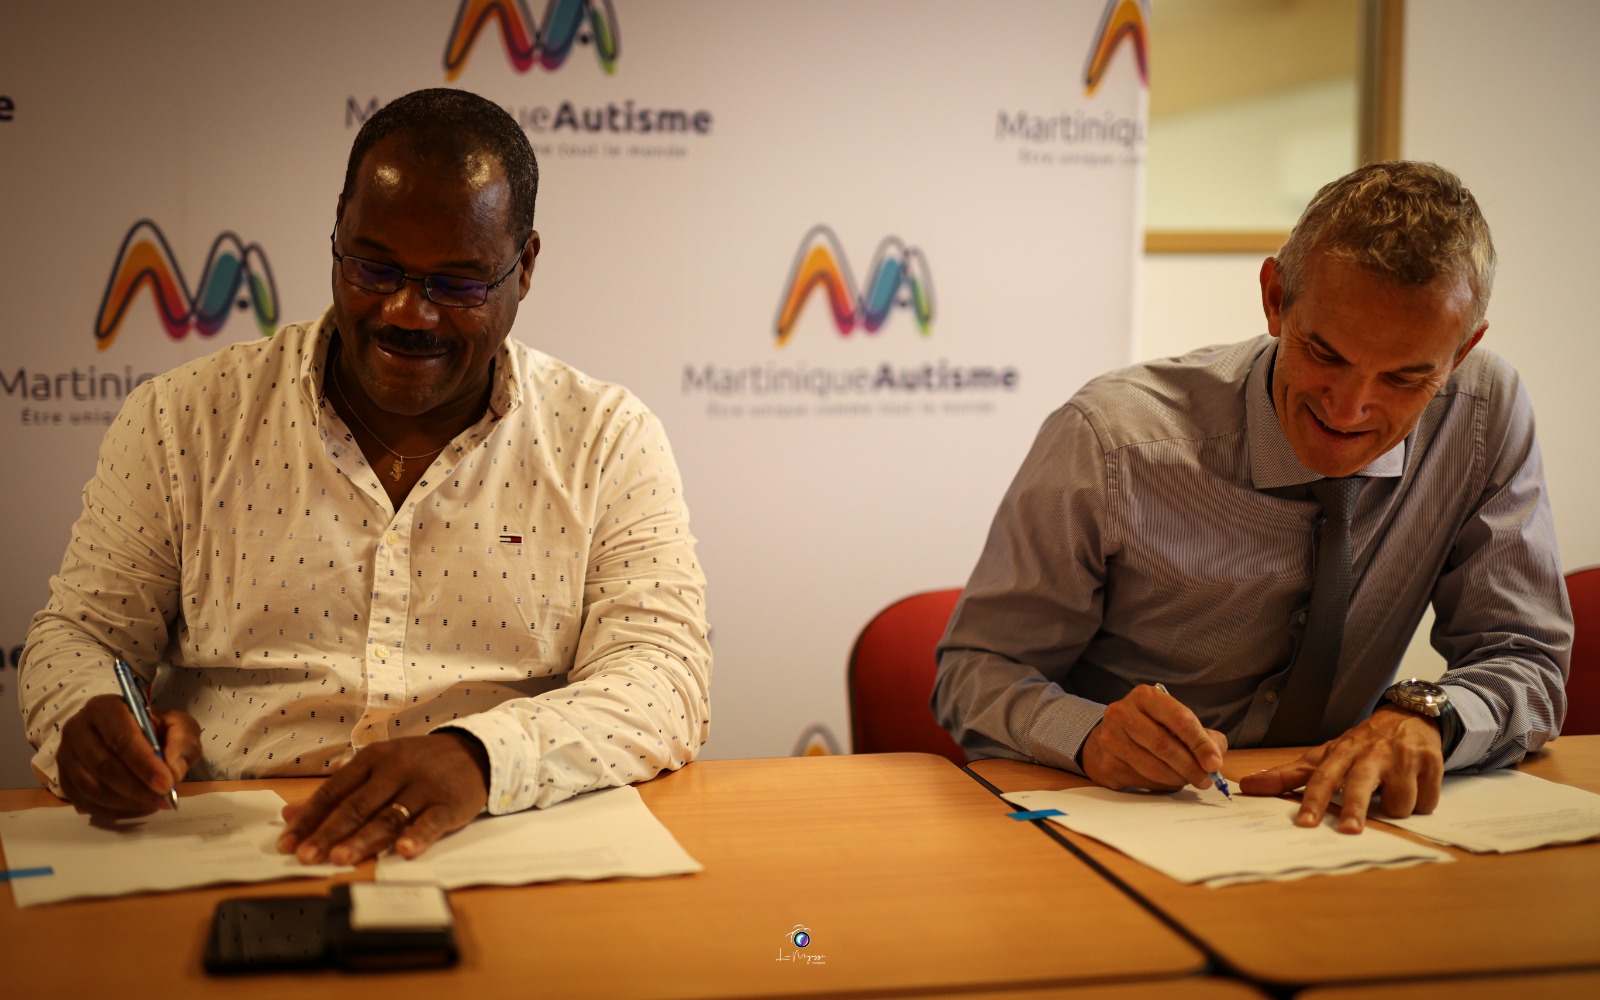     L’AFD accorde un prêt de 11,6 millions d’euro à Martinique Autisme

